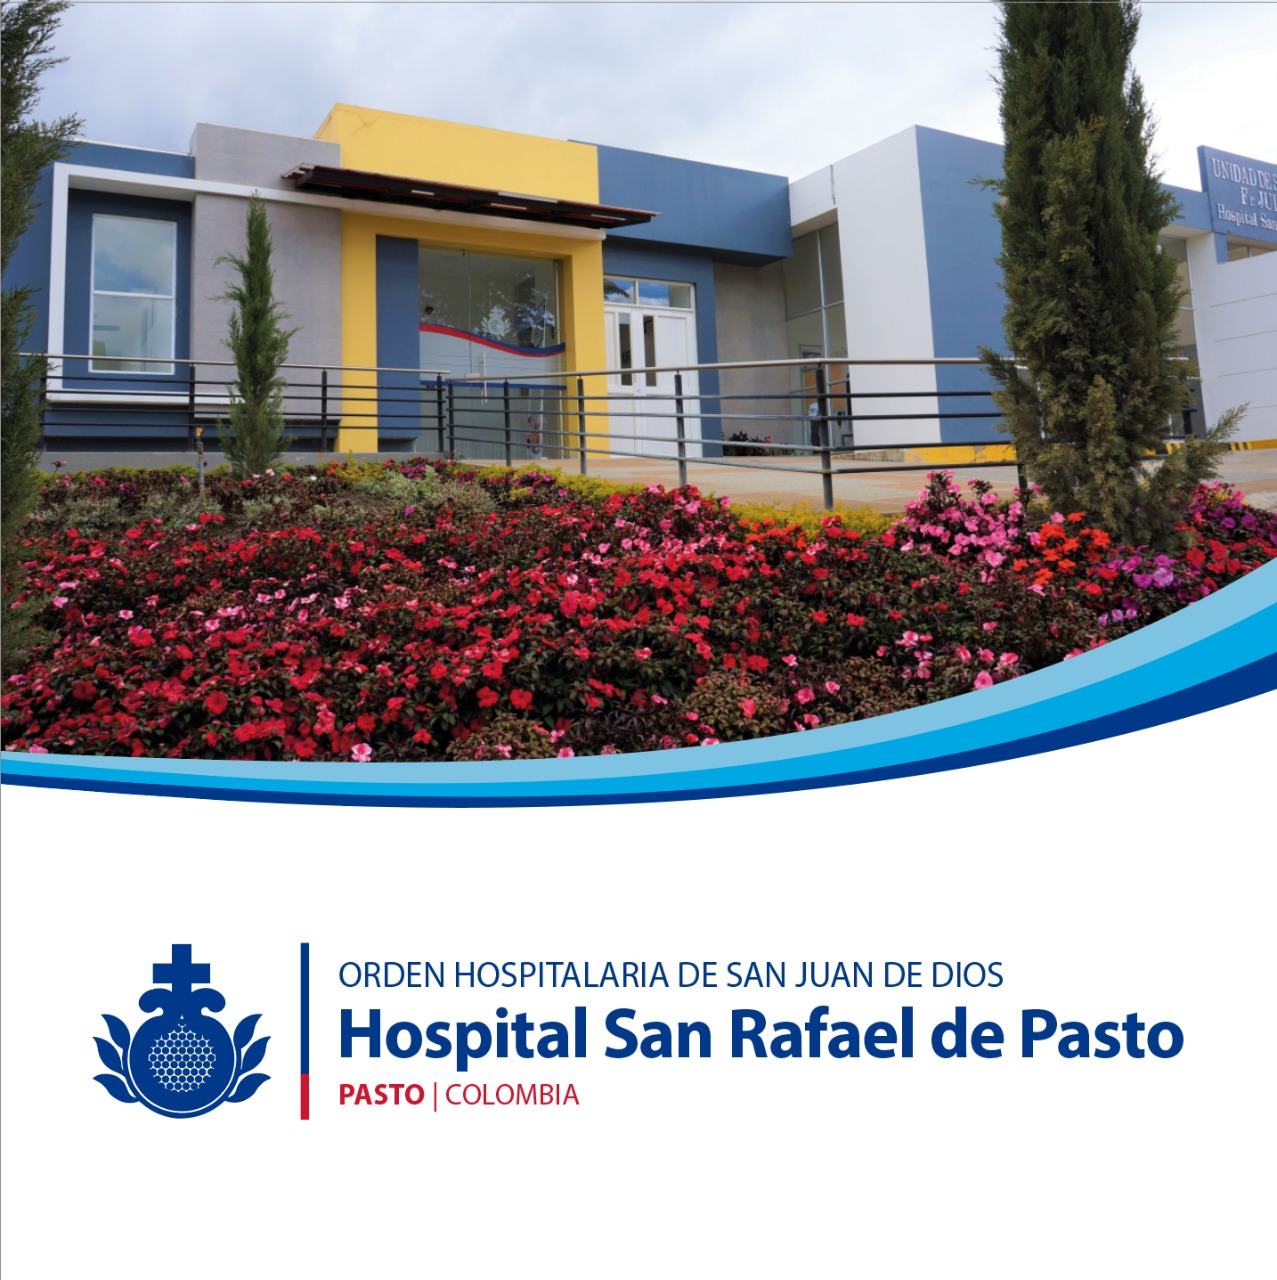 Centro Colombia Hospital San Rafael | Orden Hospitalaria San Juan de Dios